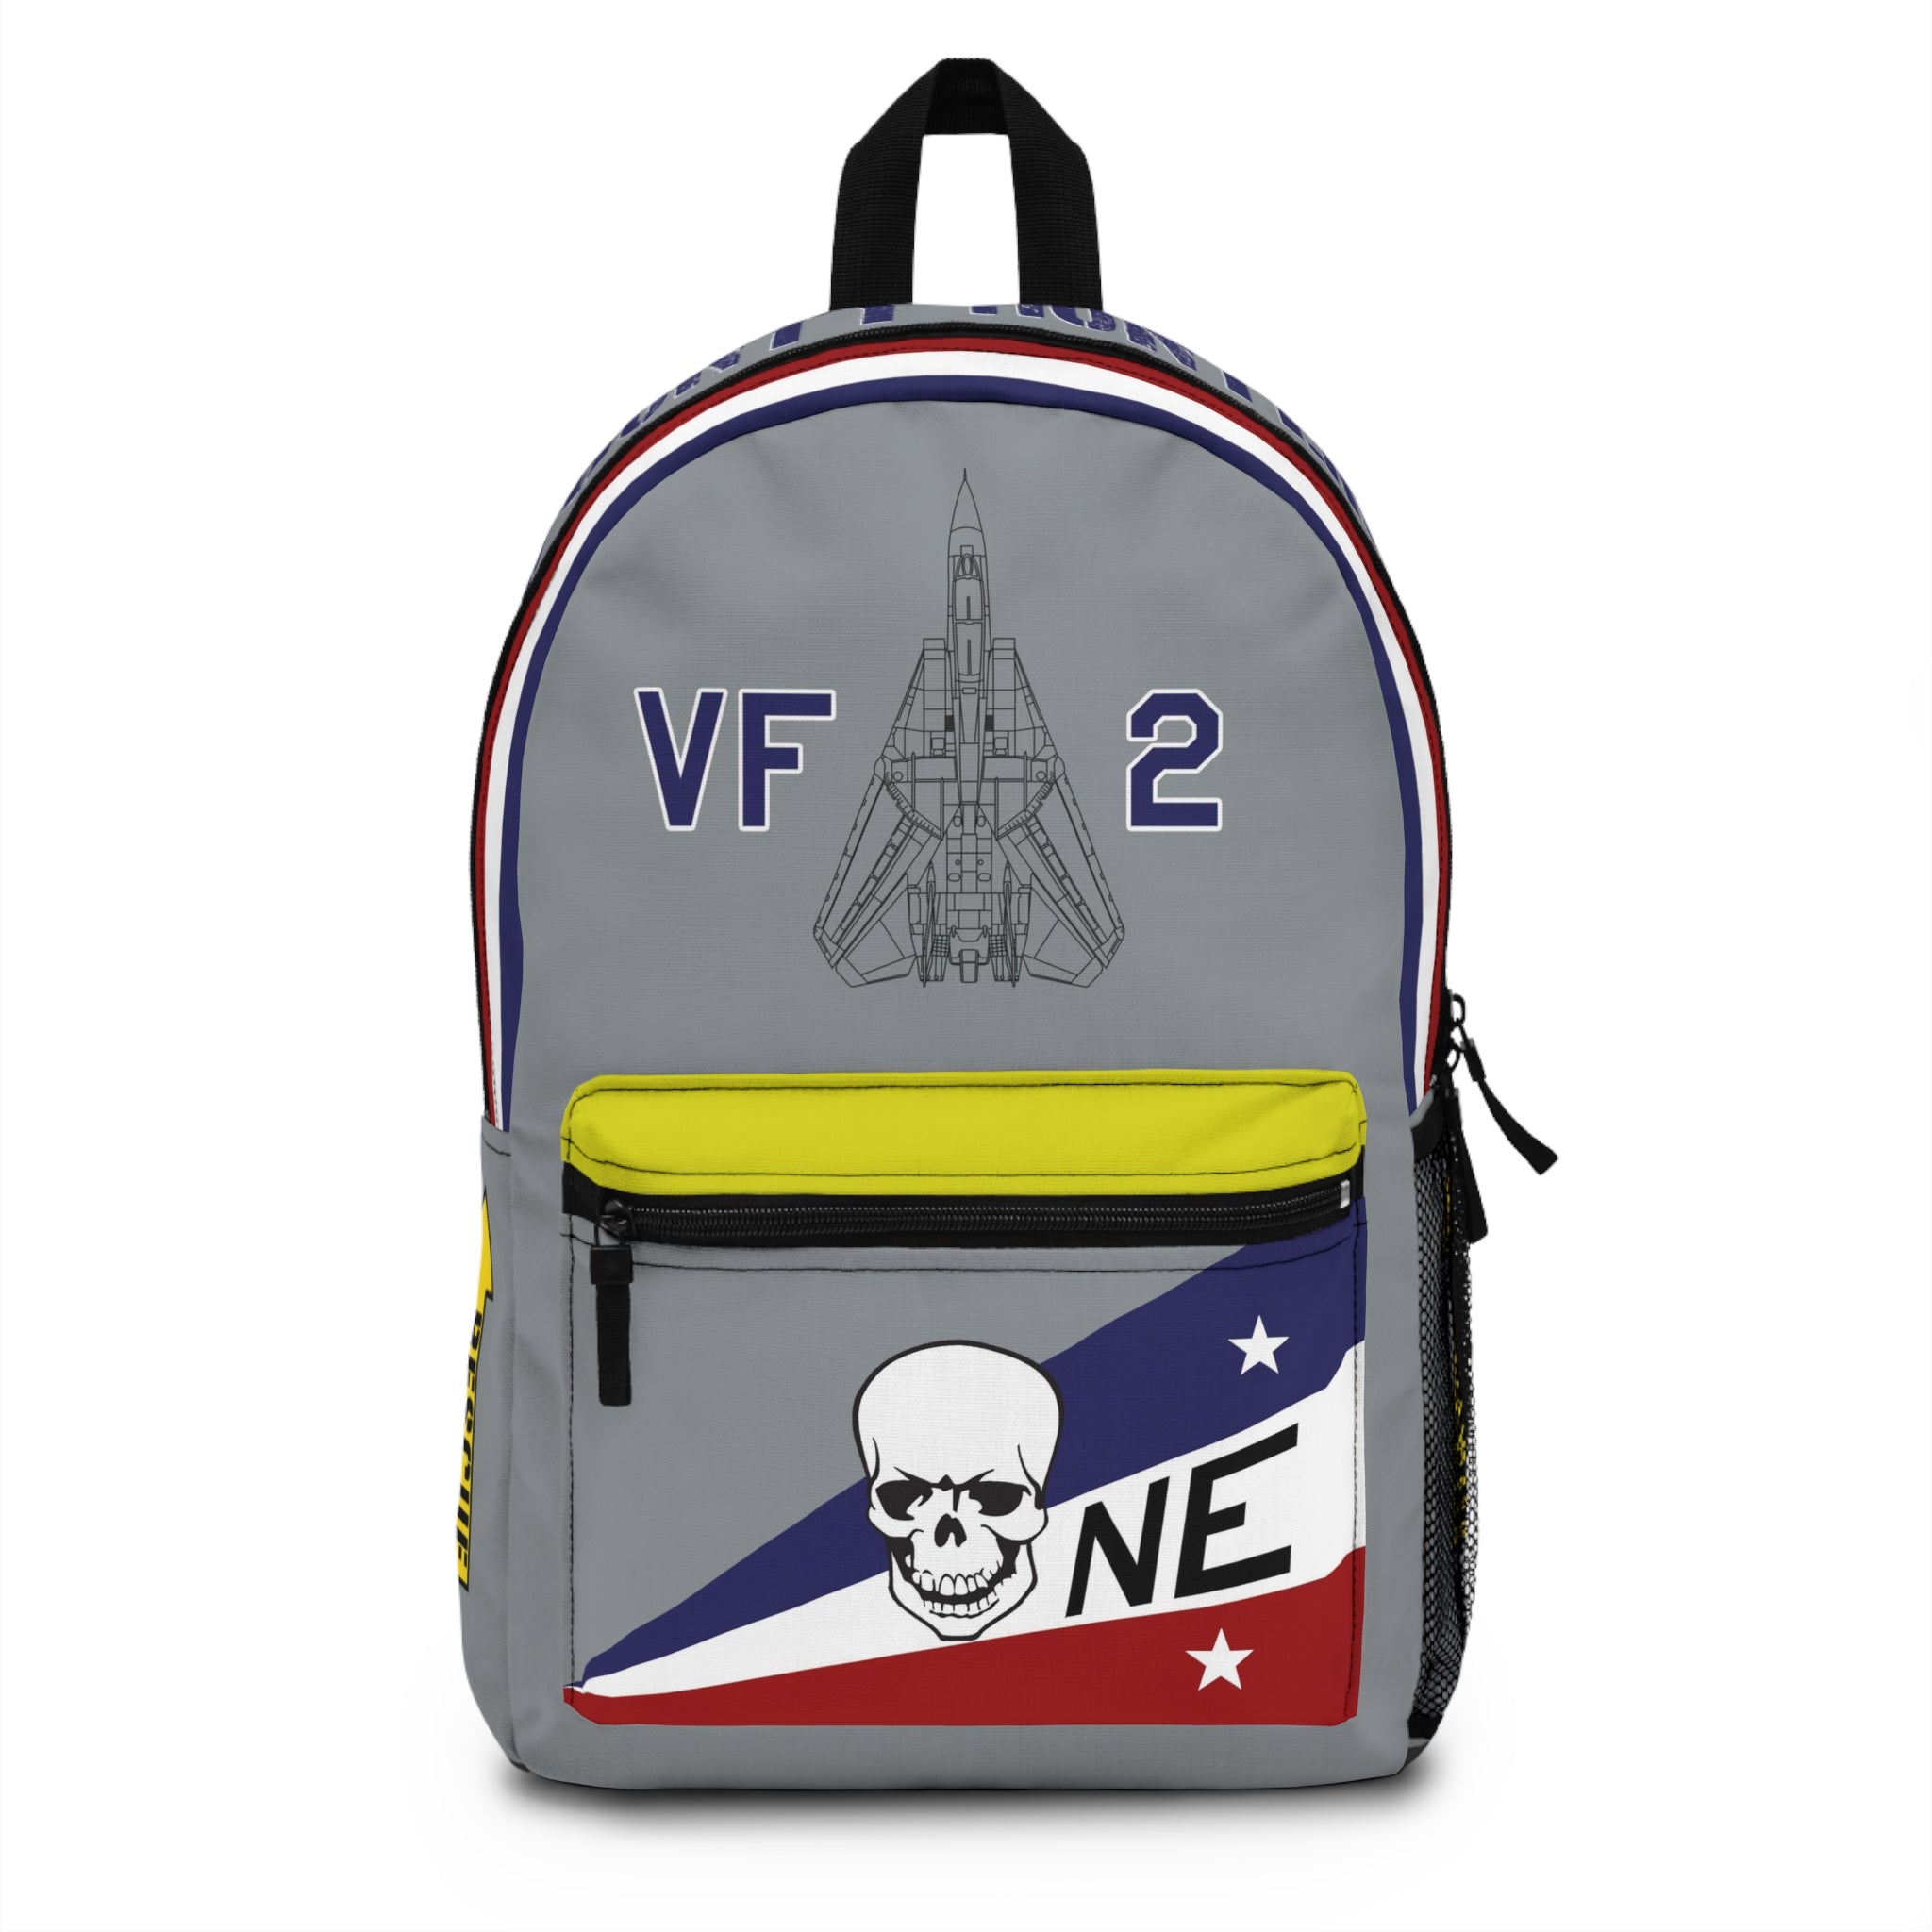 VF-2 "Bounty Hunters" Backpack - I Love a Hangar